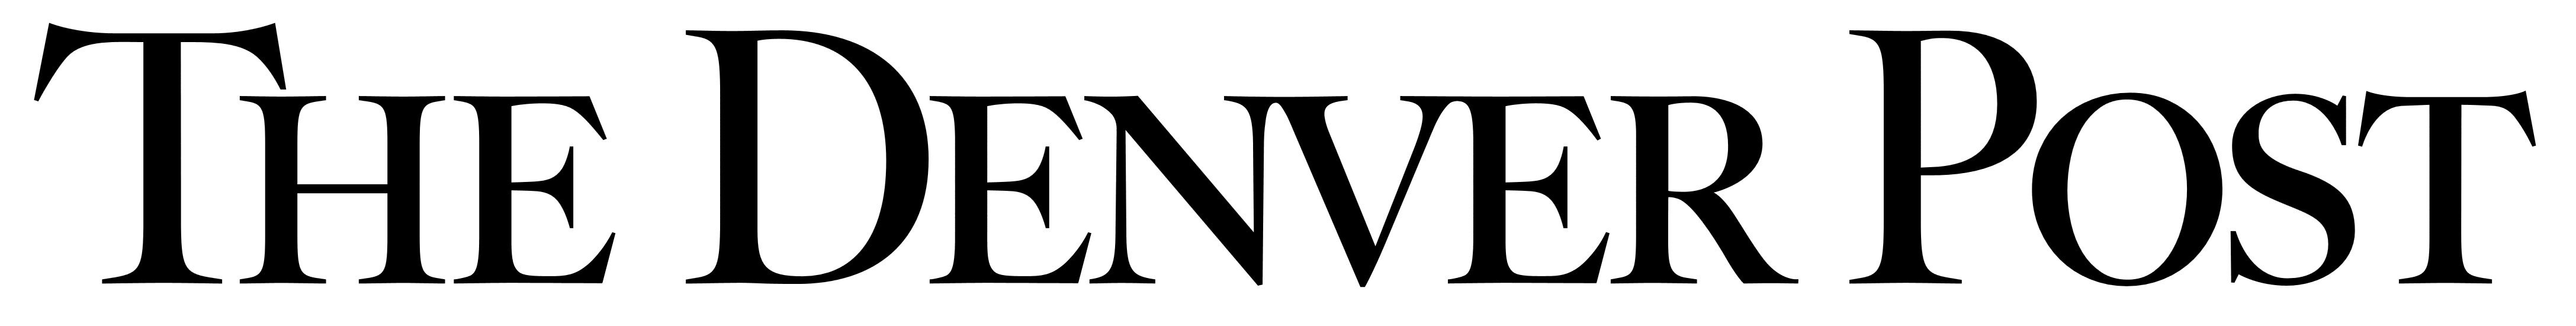 The Denver Post – Скачать логотипы